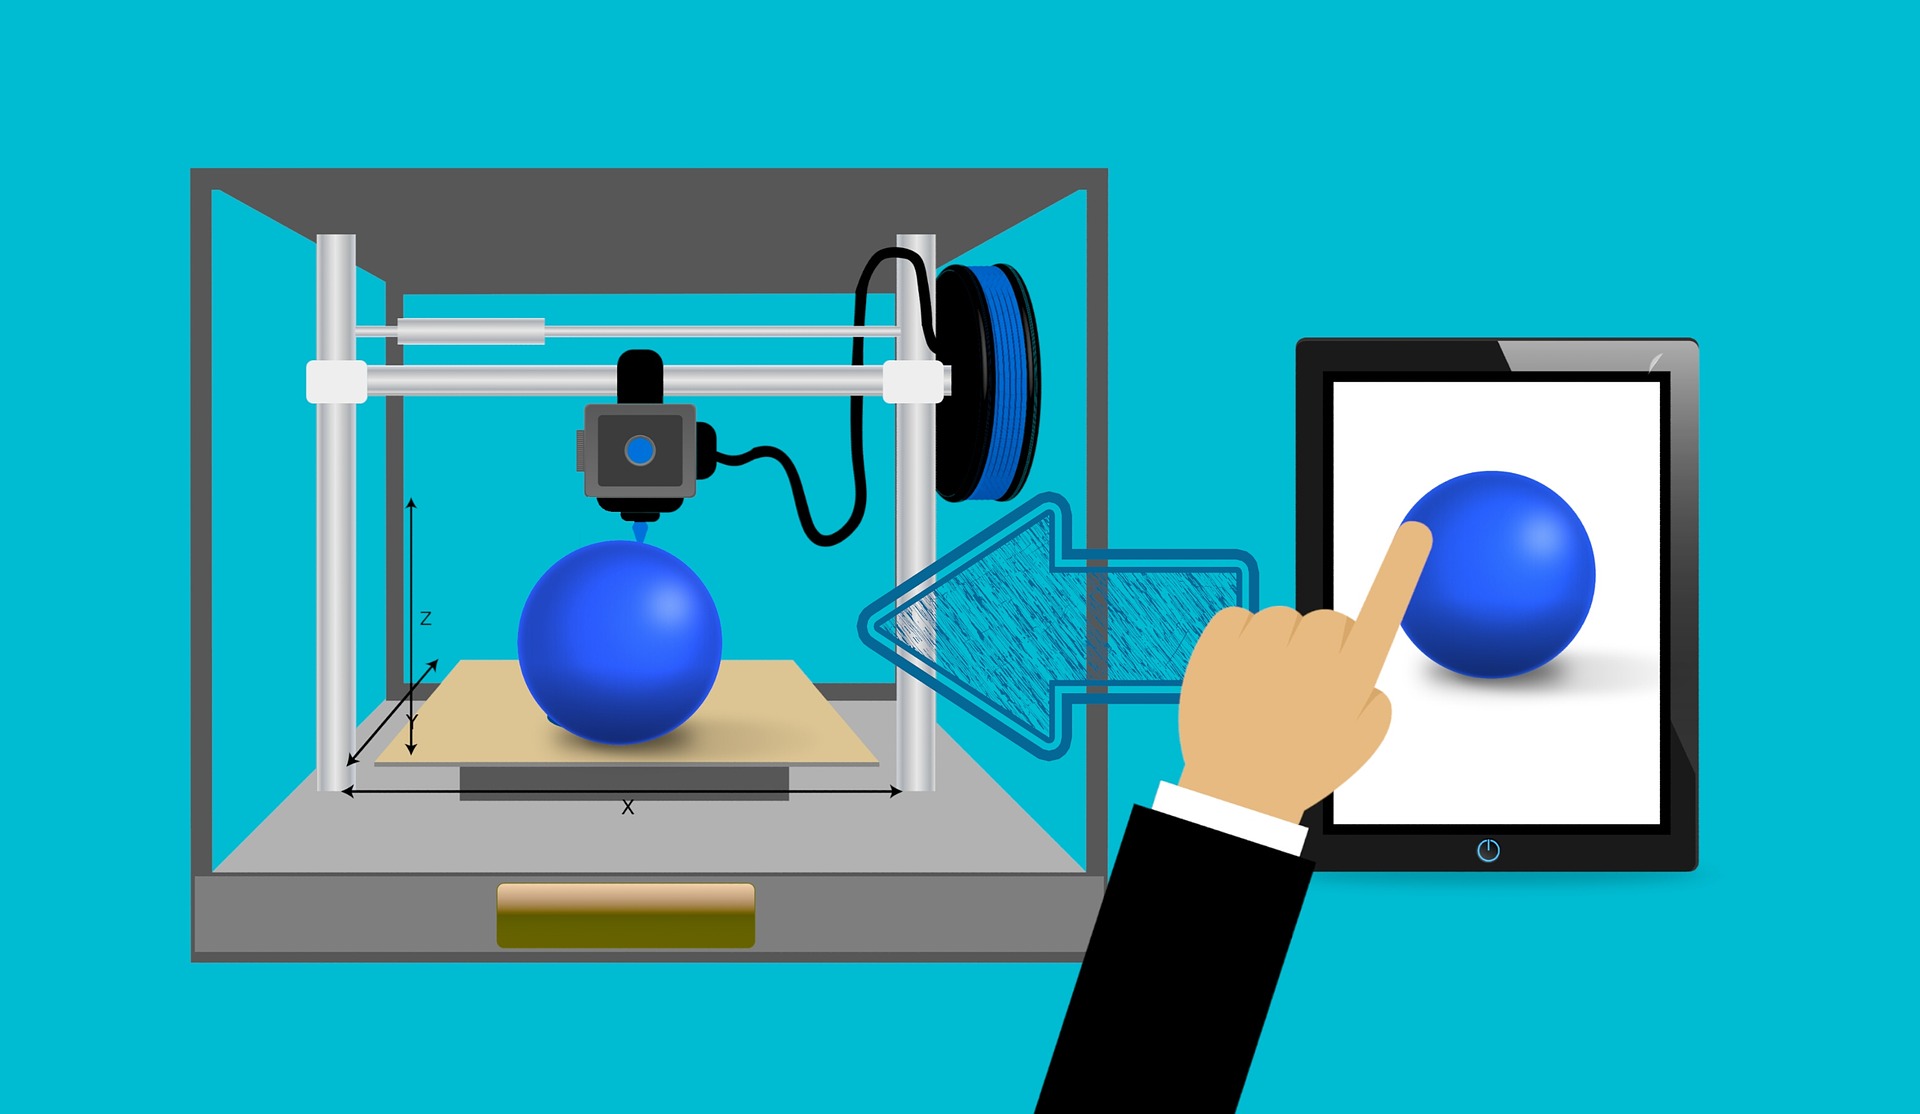 3D Yazıcı ile Evinizde Altın Bilezik Üretmek İster misiniz?